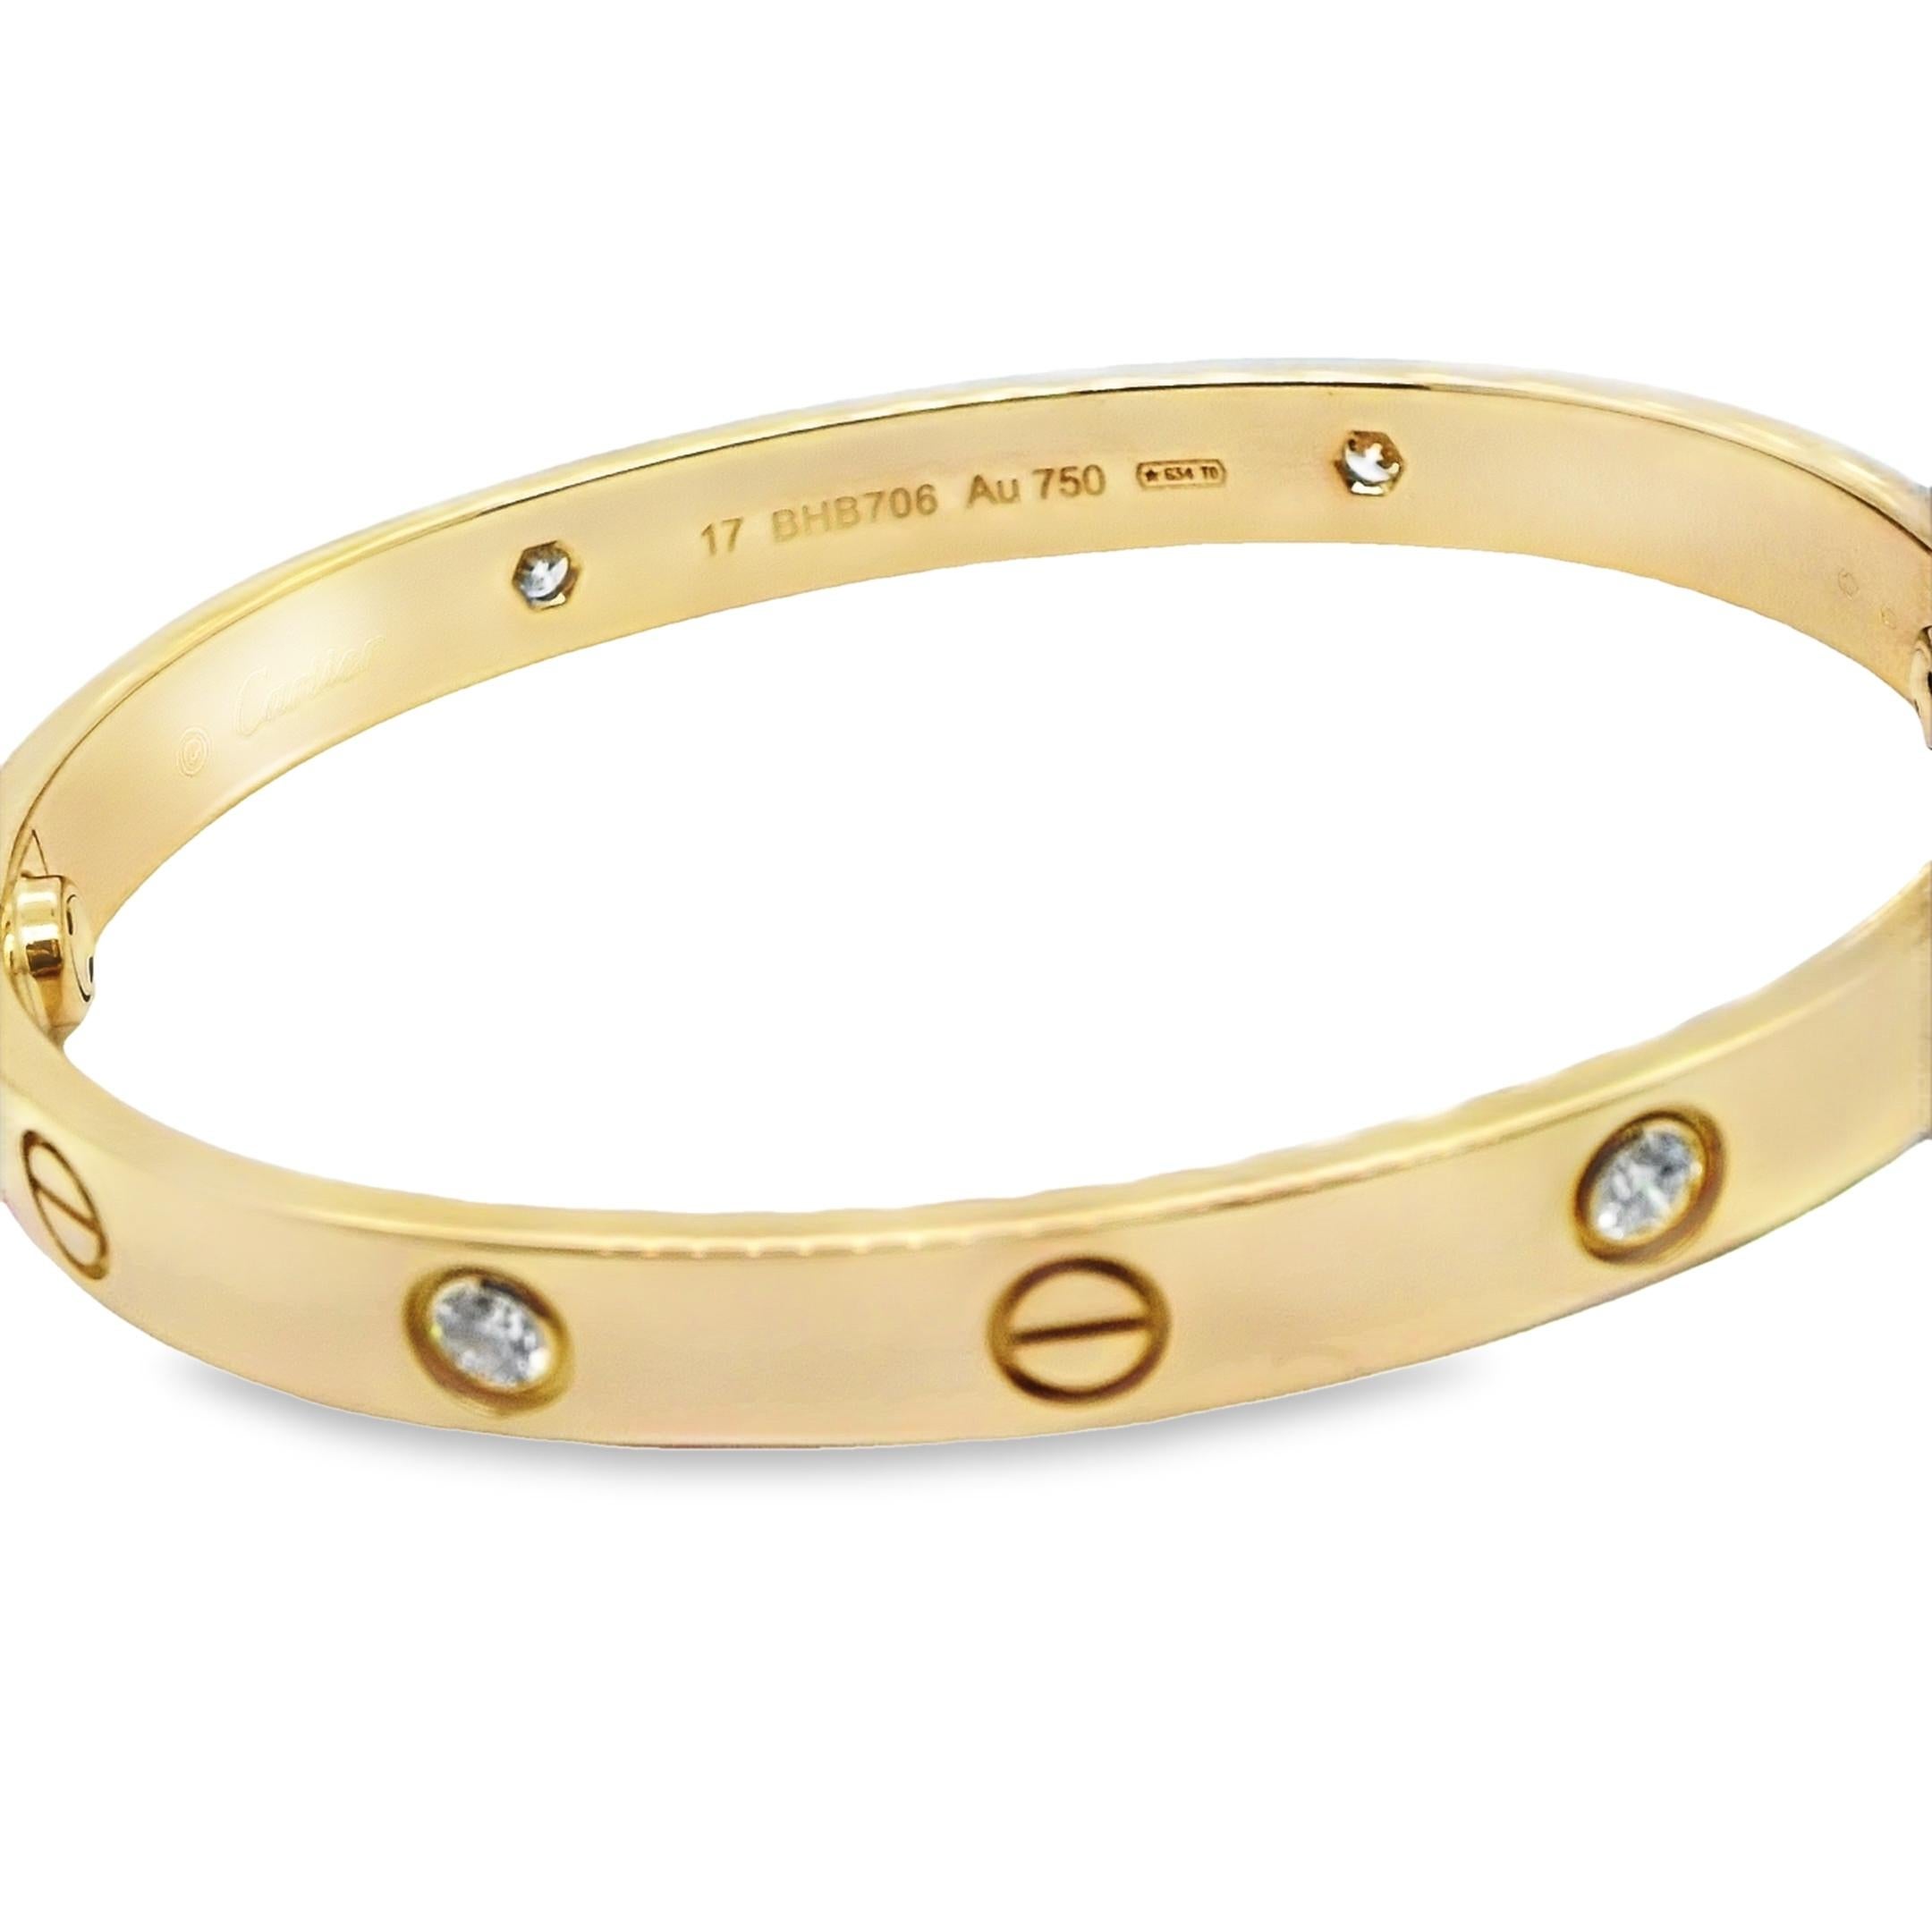 Bracelet Love de Cartier, serti de 4 diamants.

Le bracelet iconique de Cartier, taille 17cm avec 4 Diamants Ref : B6070017

Cet étonnant bracelet chic est entièrement serti en or jaune 18ct avec 4 diamants d'un poids total de 0,42ct. Un must pour